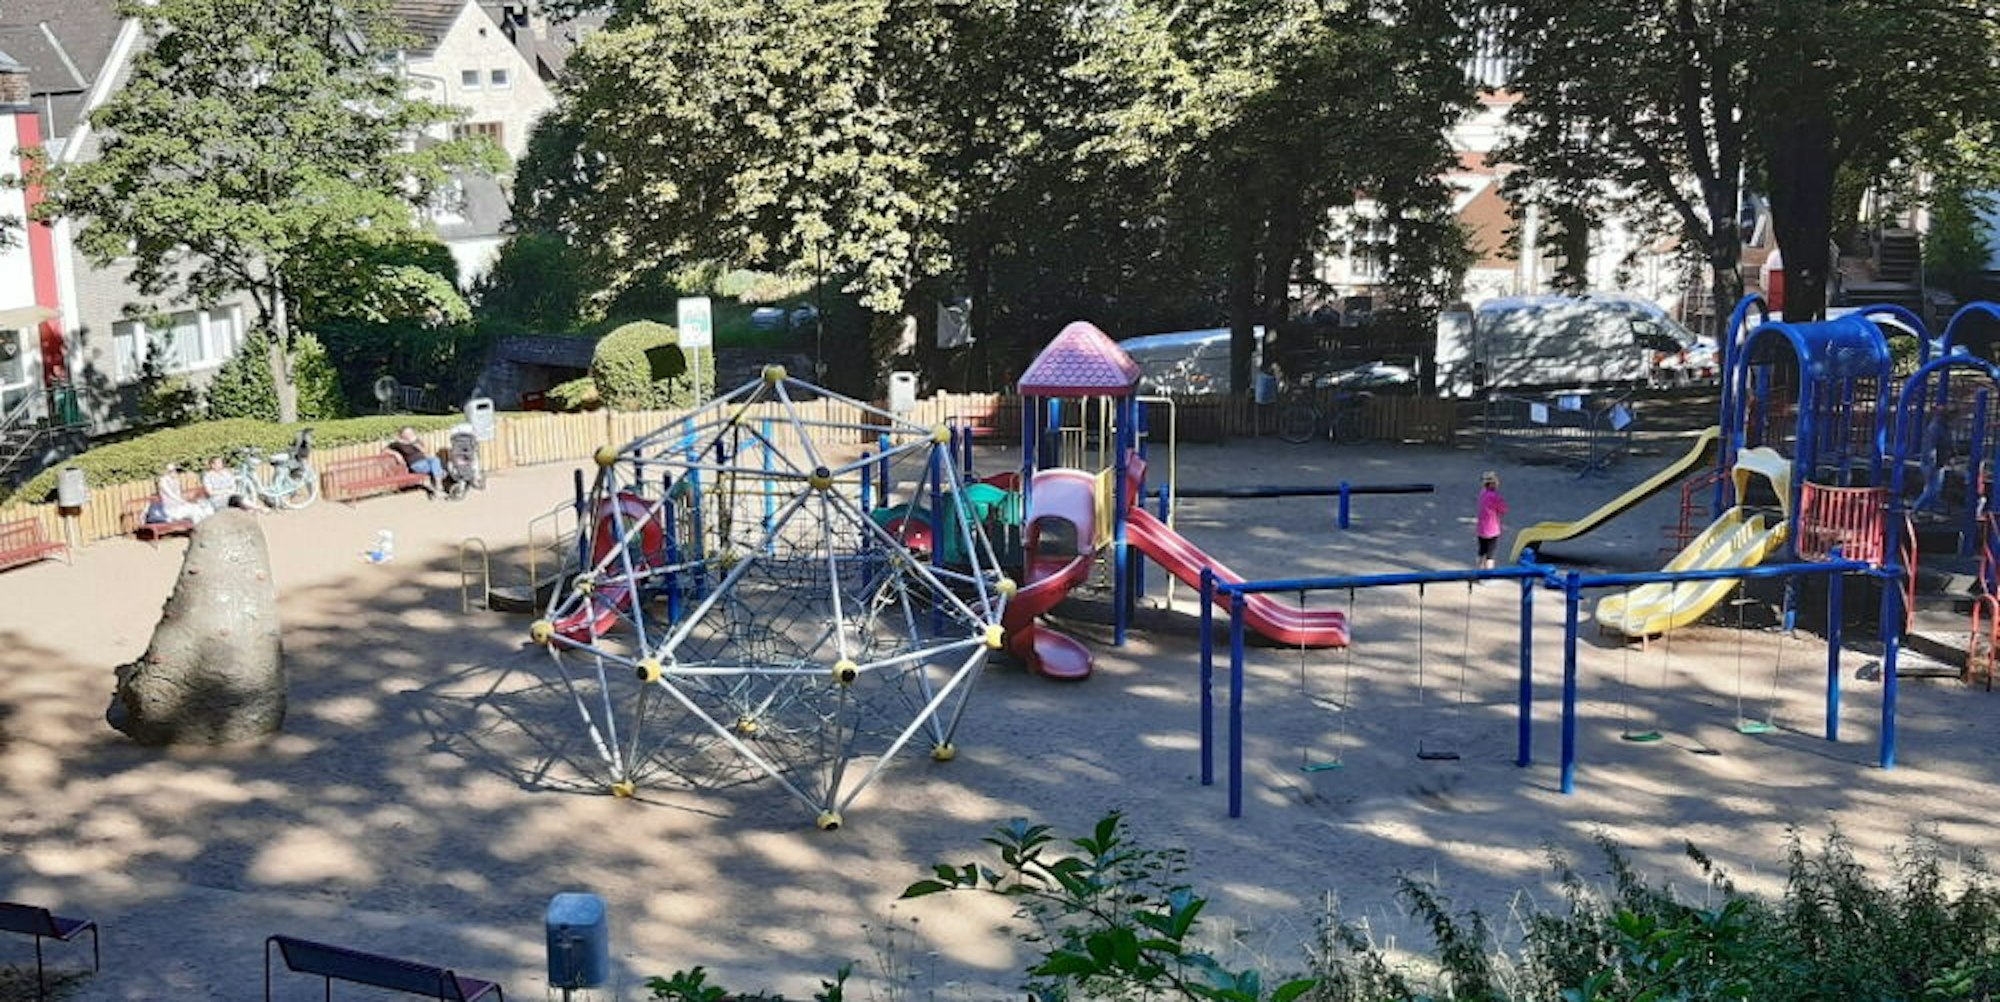 Der Spielplatz auf dem Michaelsberg wird bei Dunkelheit zum Treffpunkt für Jugendliche. Anwohner beschweren sich über Vandalismus und nächtliche Ruhestörungen.